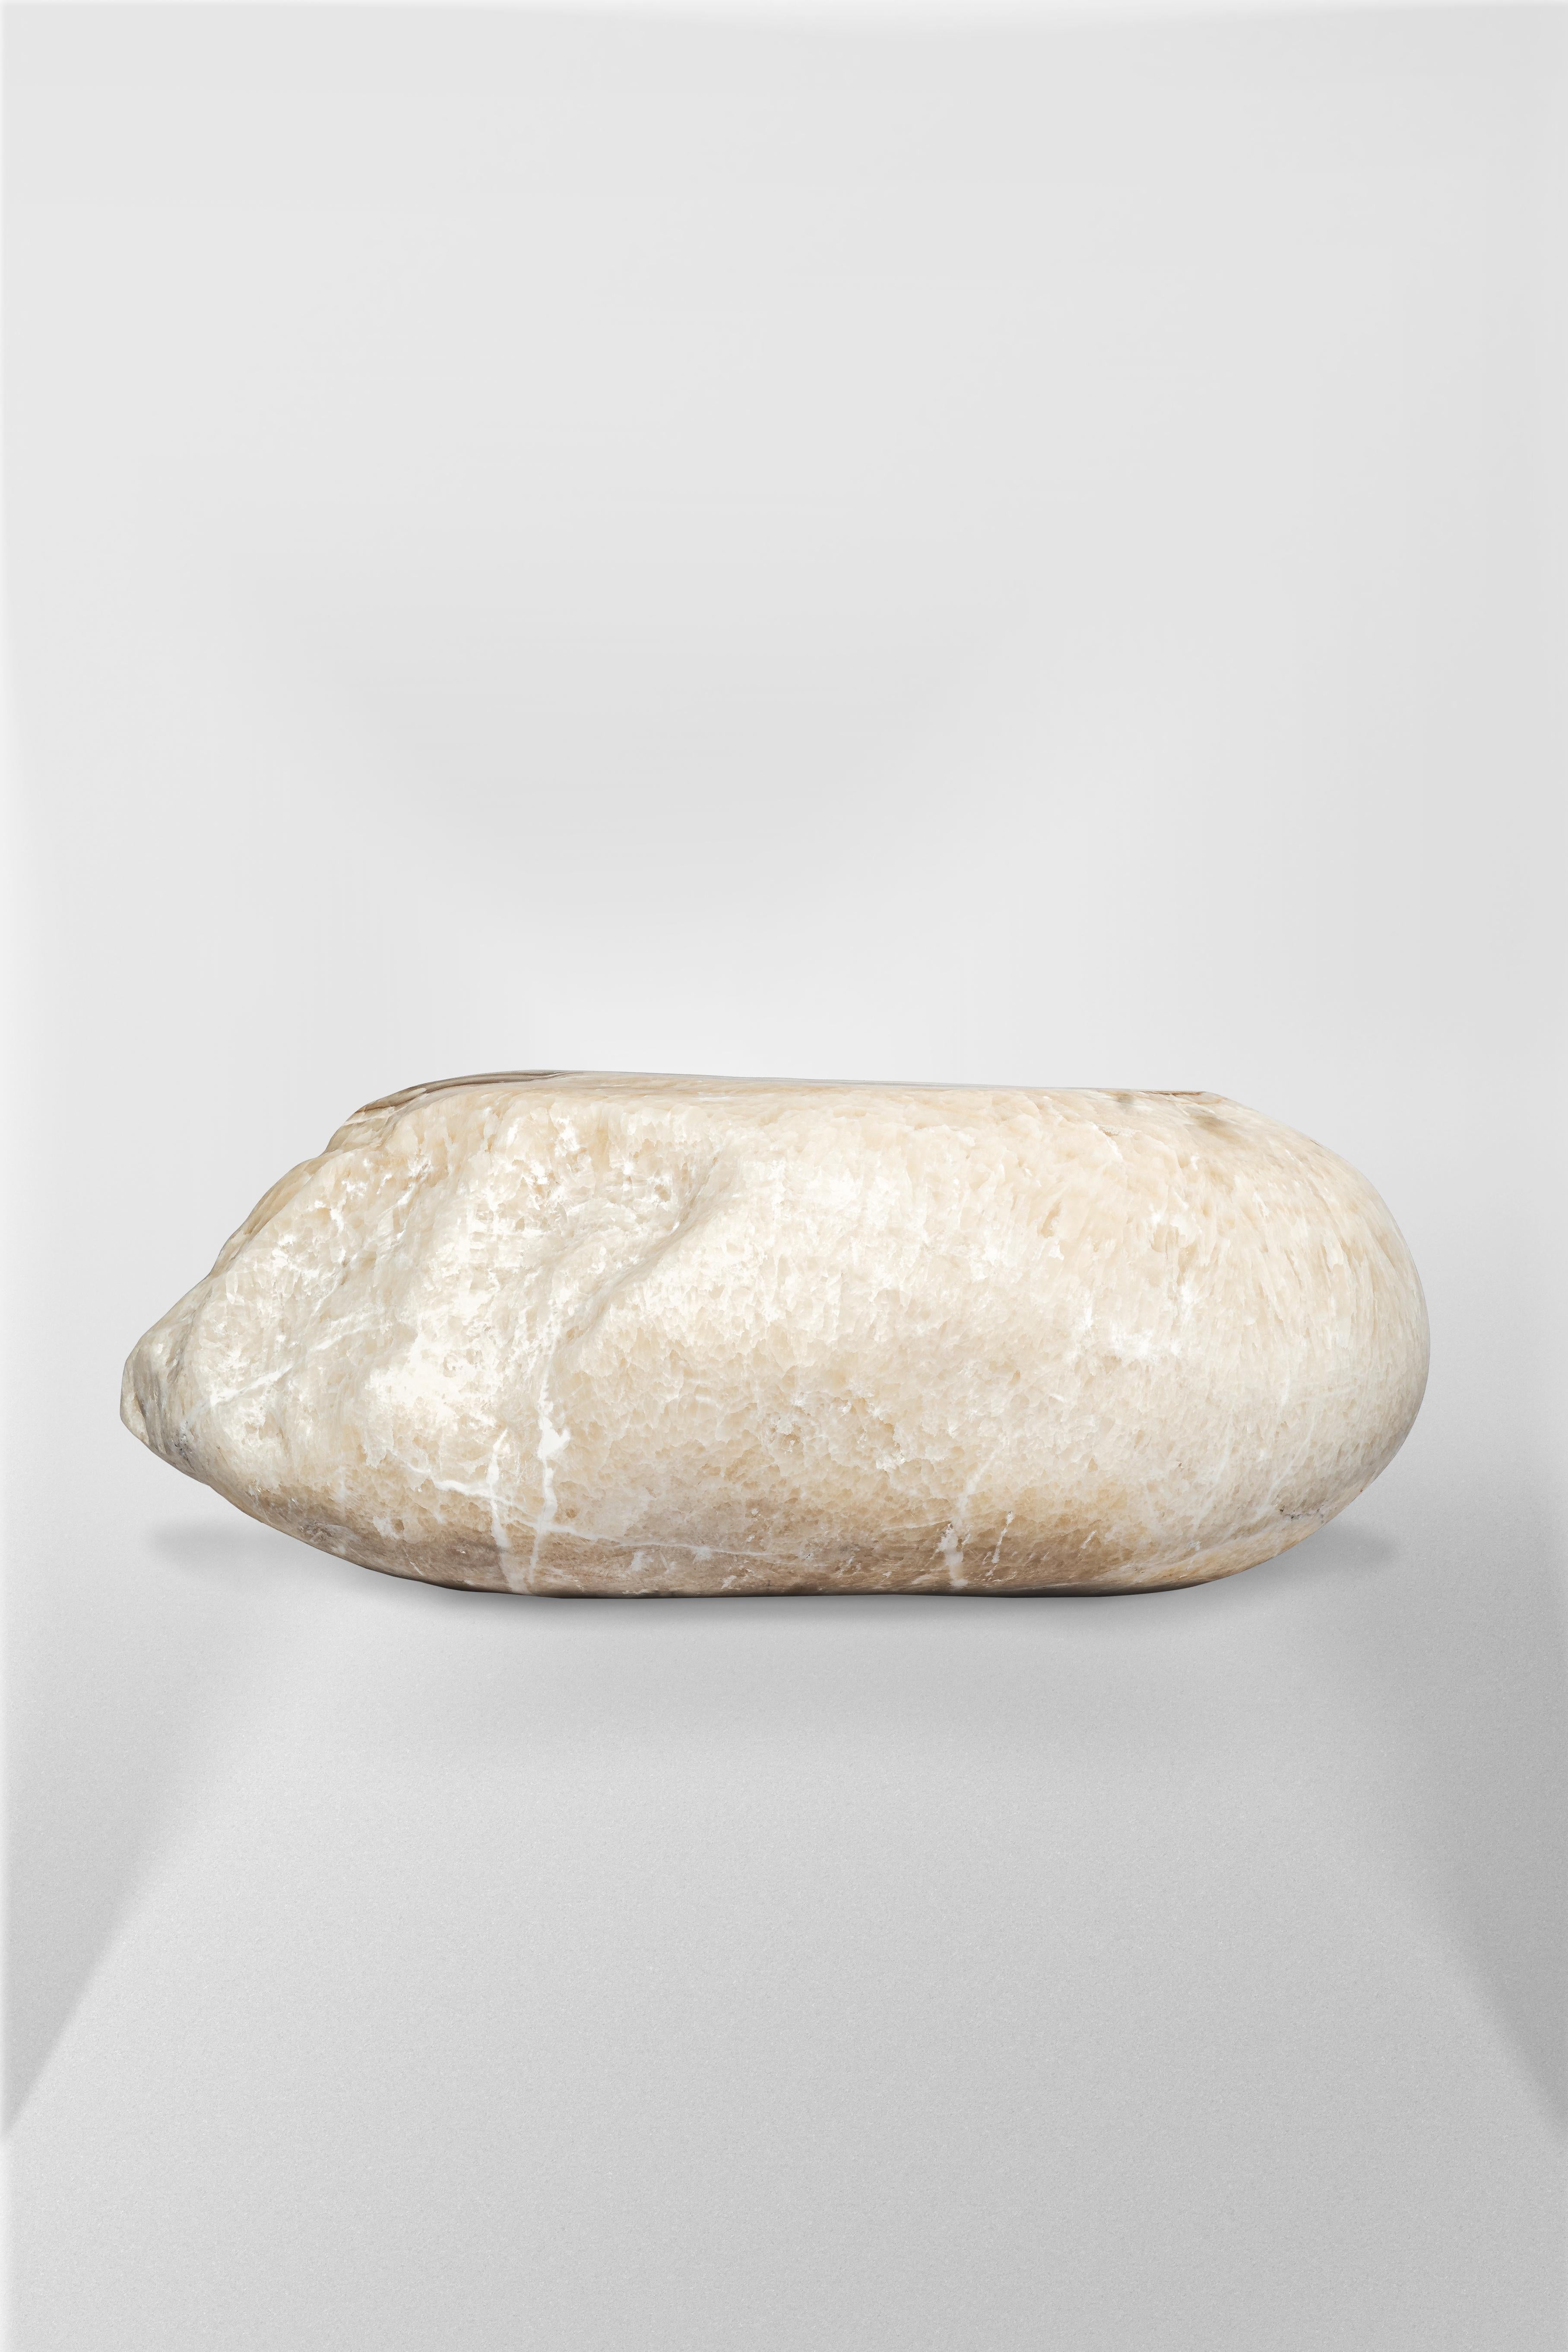 Table basse en onyx blanc de Pierre De Valck
Edition limitée à 8 pièces
Dimensions : D 100 x L 60,5 x H 40 cm. 
MATERIAL : Onyx blanc.

Pierre De Valck (1991), né à Bruxelles, est un designer gantois qui a été fasciné dès l'enfance par l'archéologie